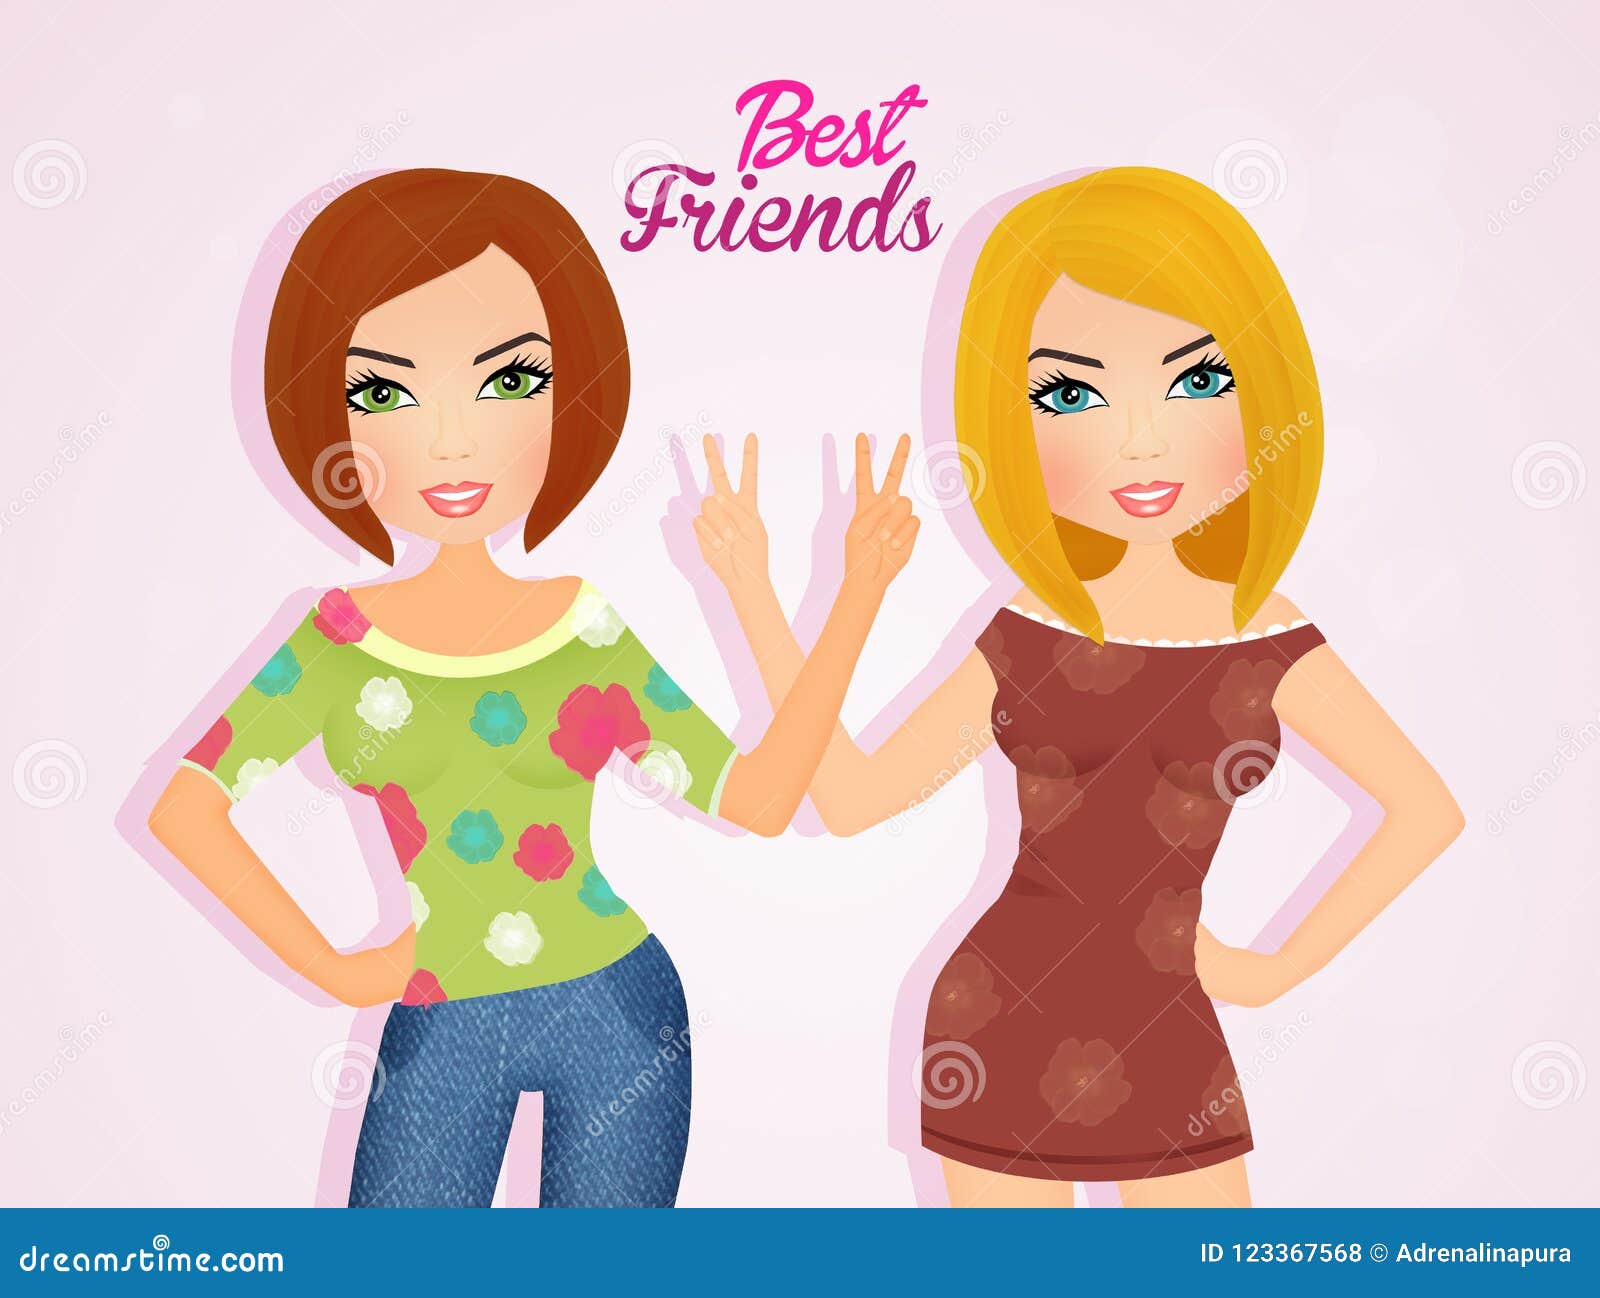 Best friend girls stock illustration. Illustration of forever - 123367568